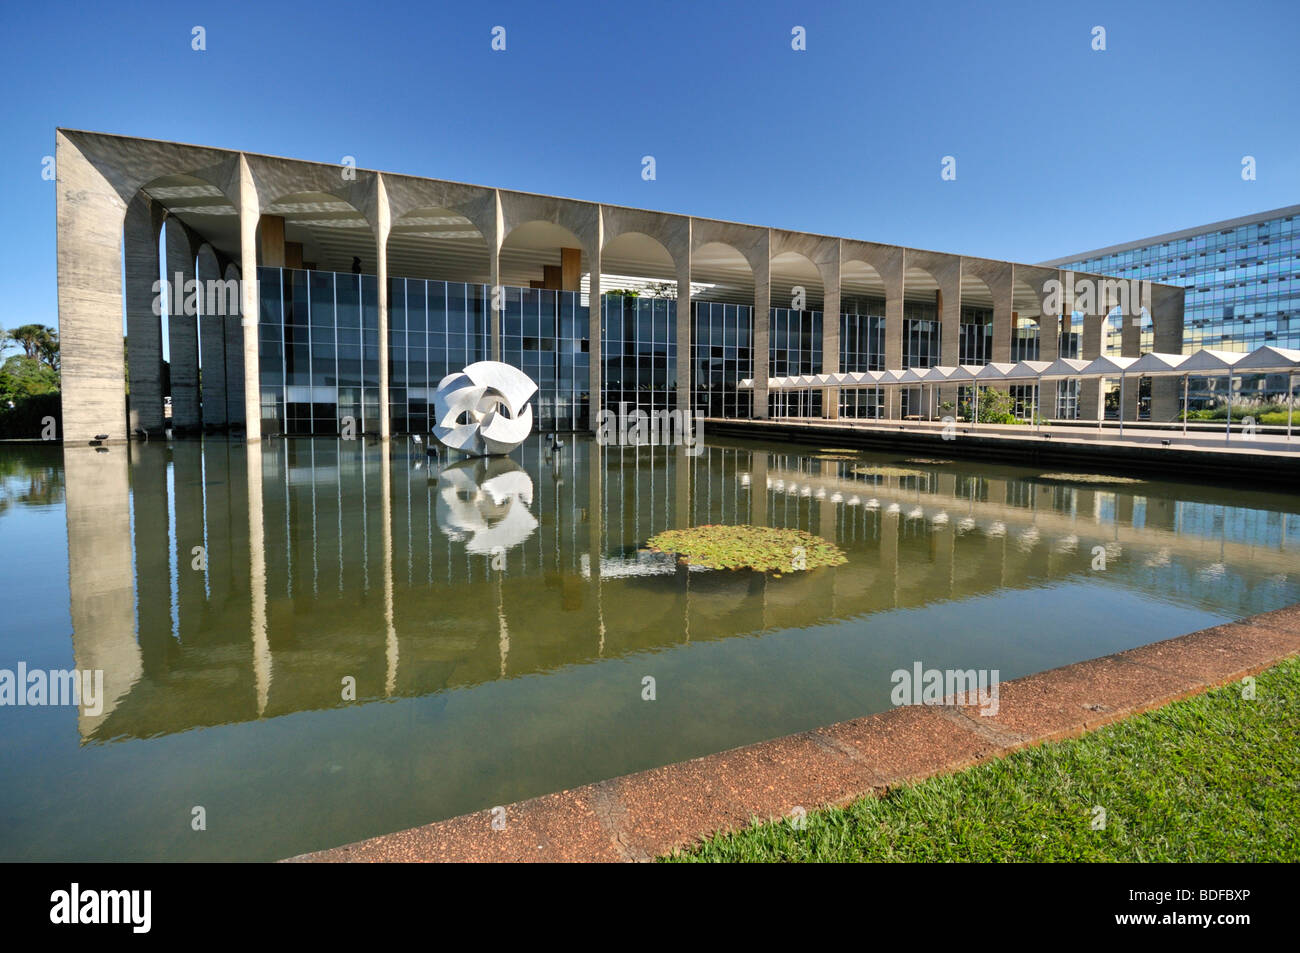 Palais Itamaraty, le ministère des Affaires étrangères, conçu par l'architecte Oscar Niemeyer, Brasilia, Brésil, District Fédéral Banque D'Images